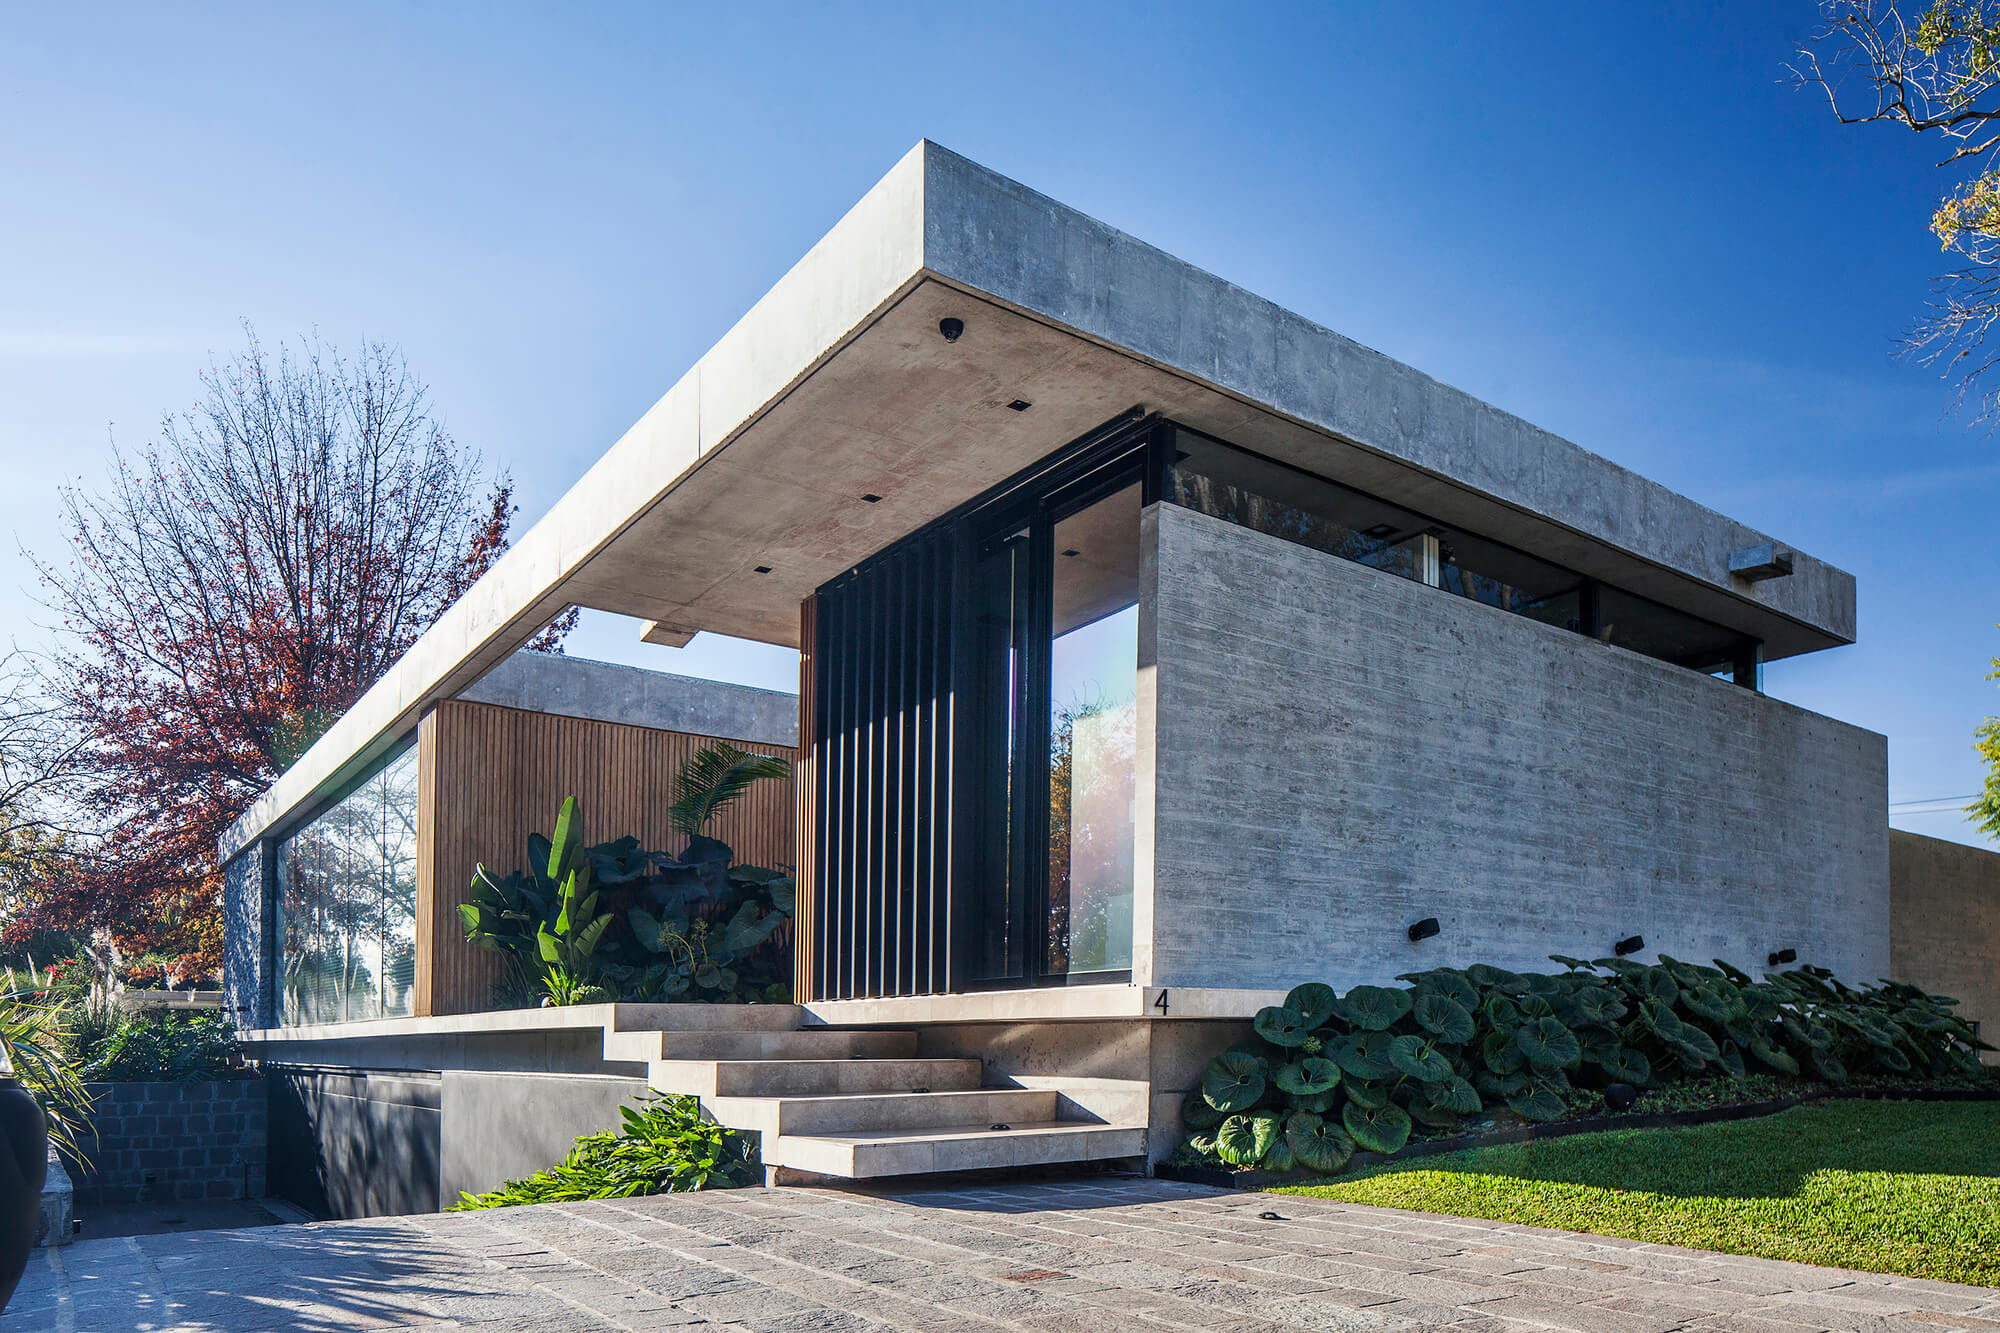 Residência BT Estudio Jorgelina Tortorici Arq Fachada Casa Moderno Concreto Vidro e Ripado de Madeira na Parede